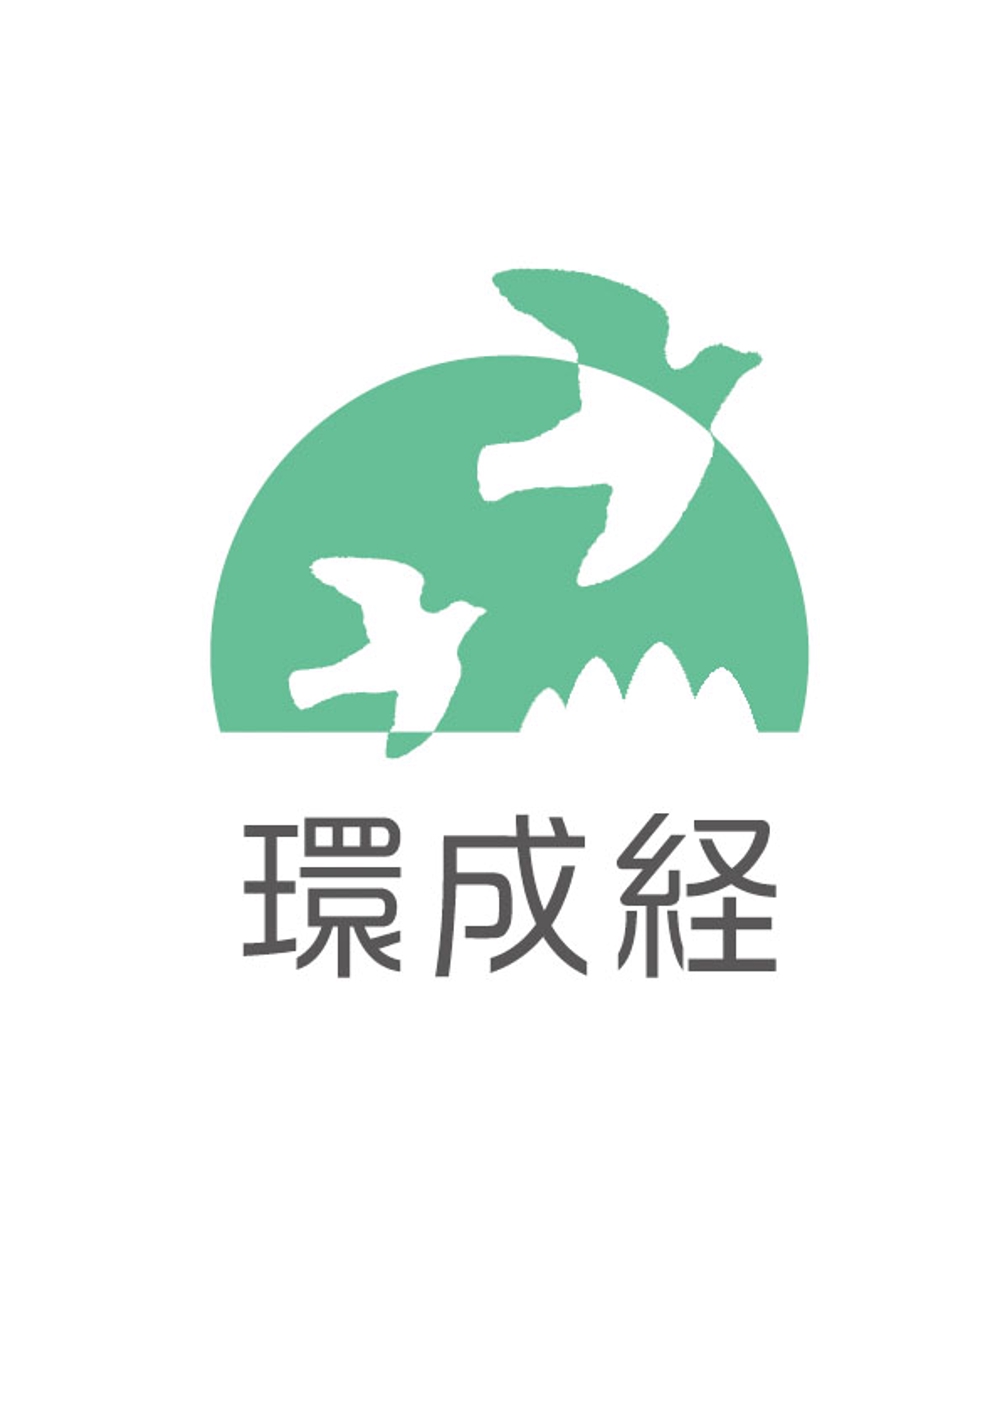 環成経ロゴ1.jpg